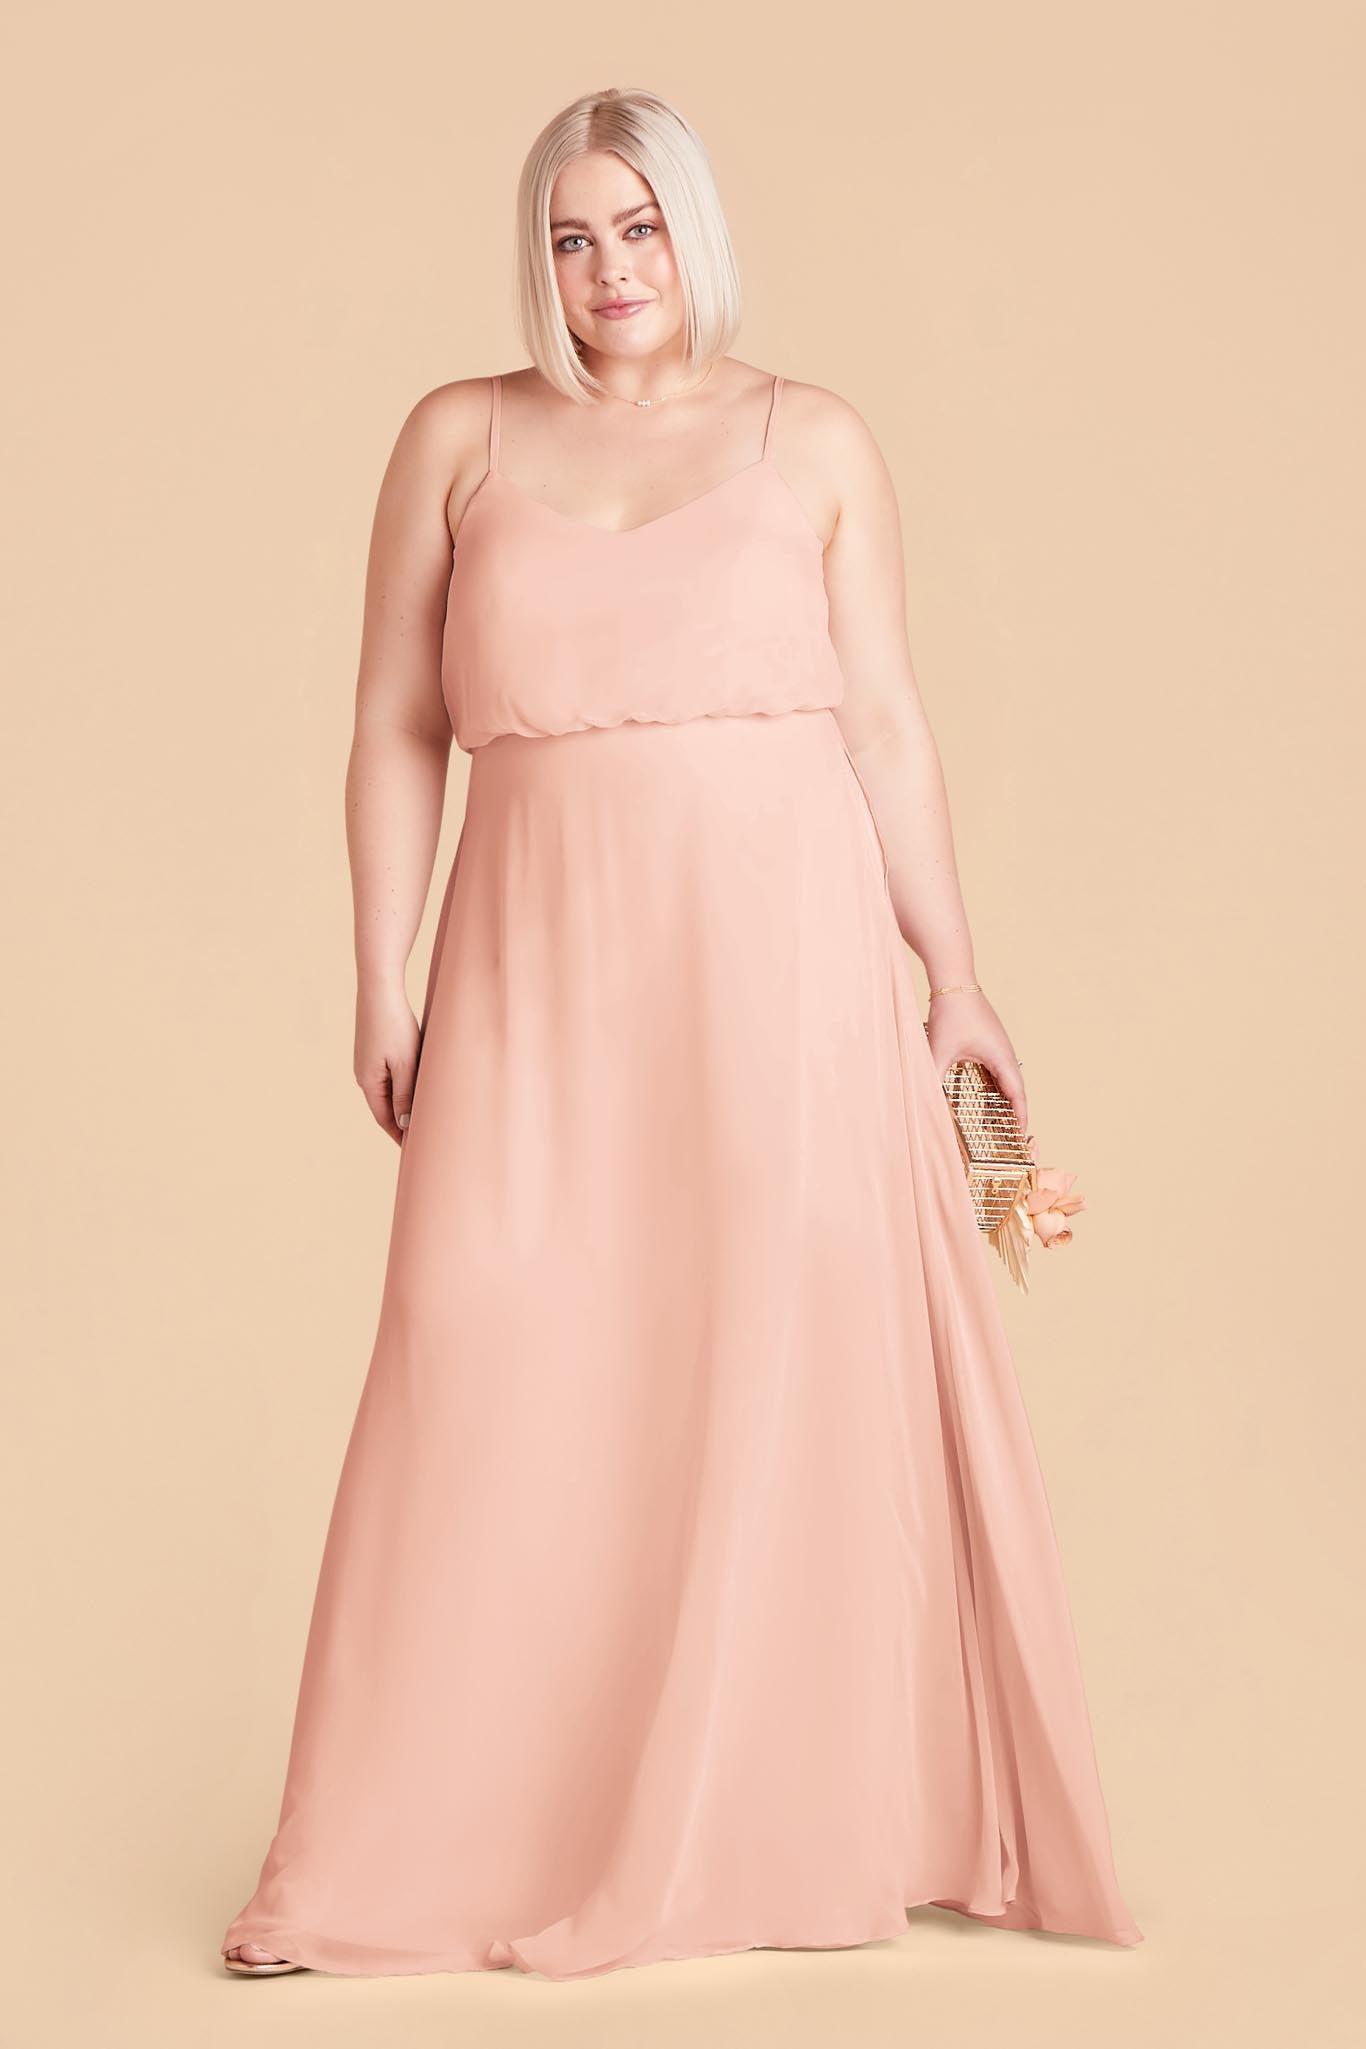 Blush Pink Gwennie Dress by Birdy Grey